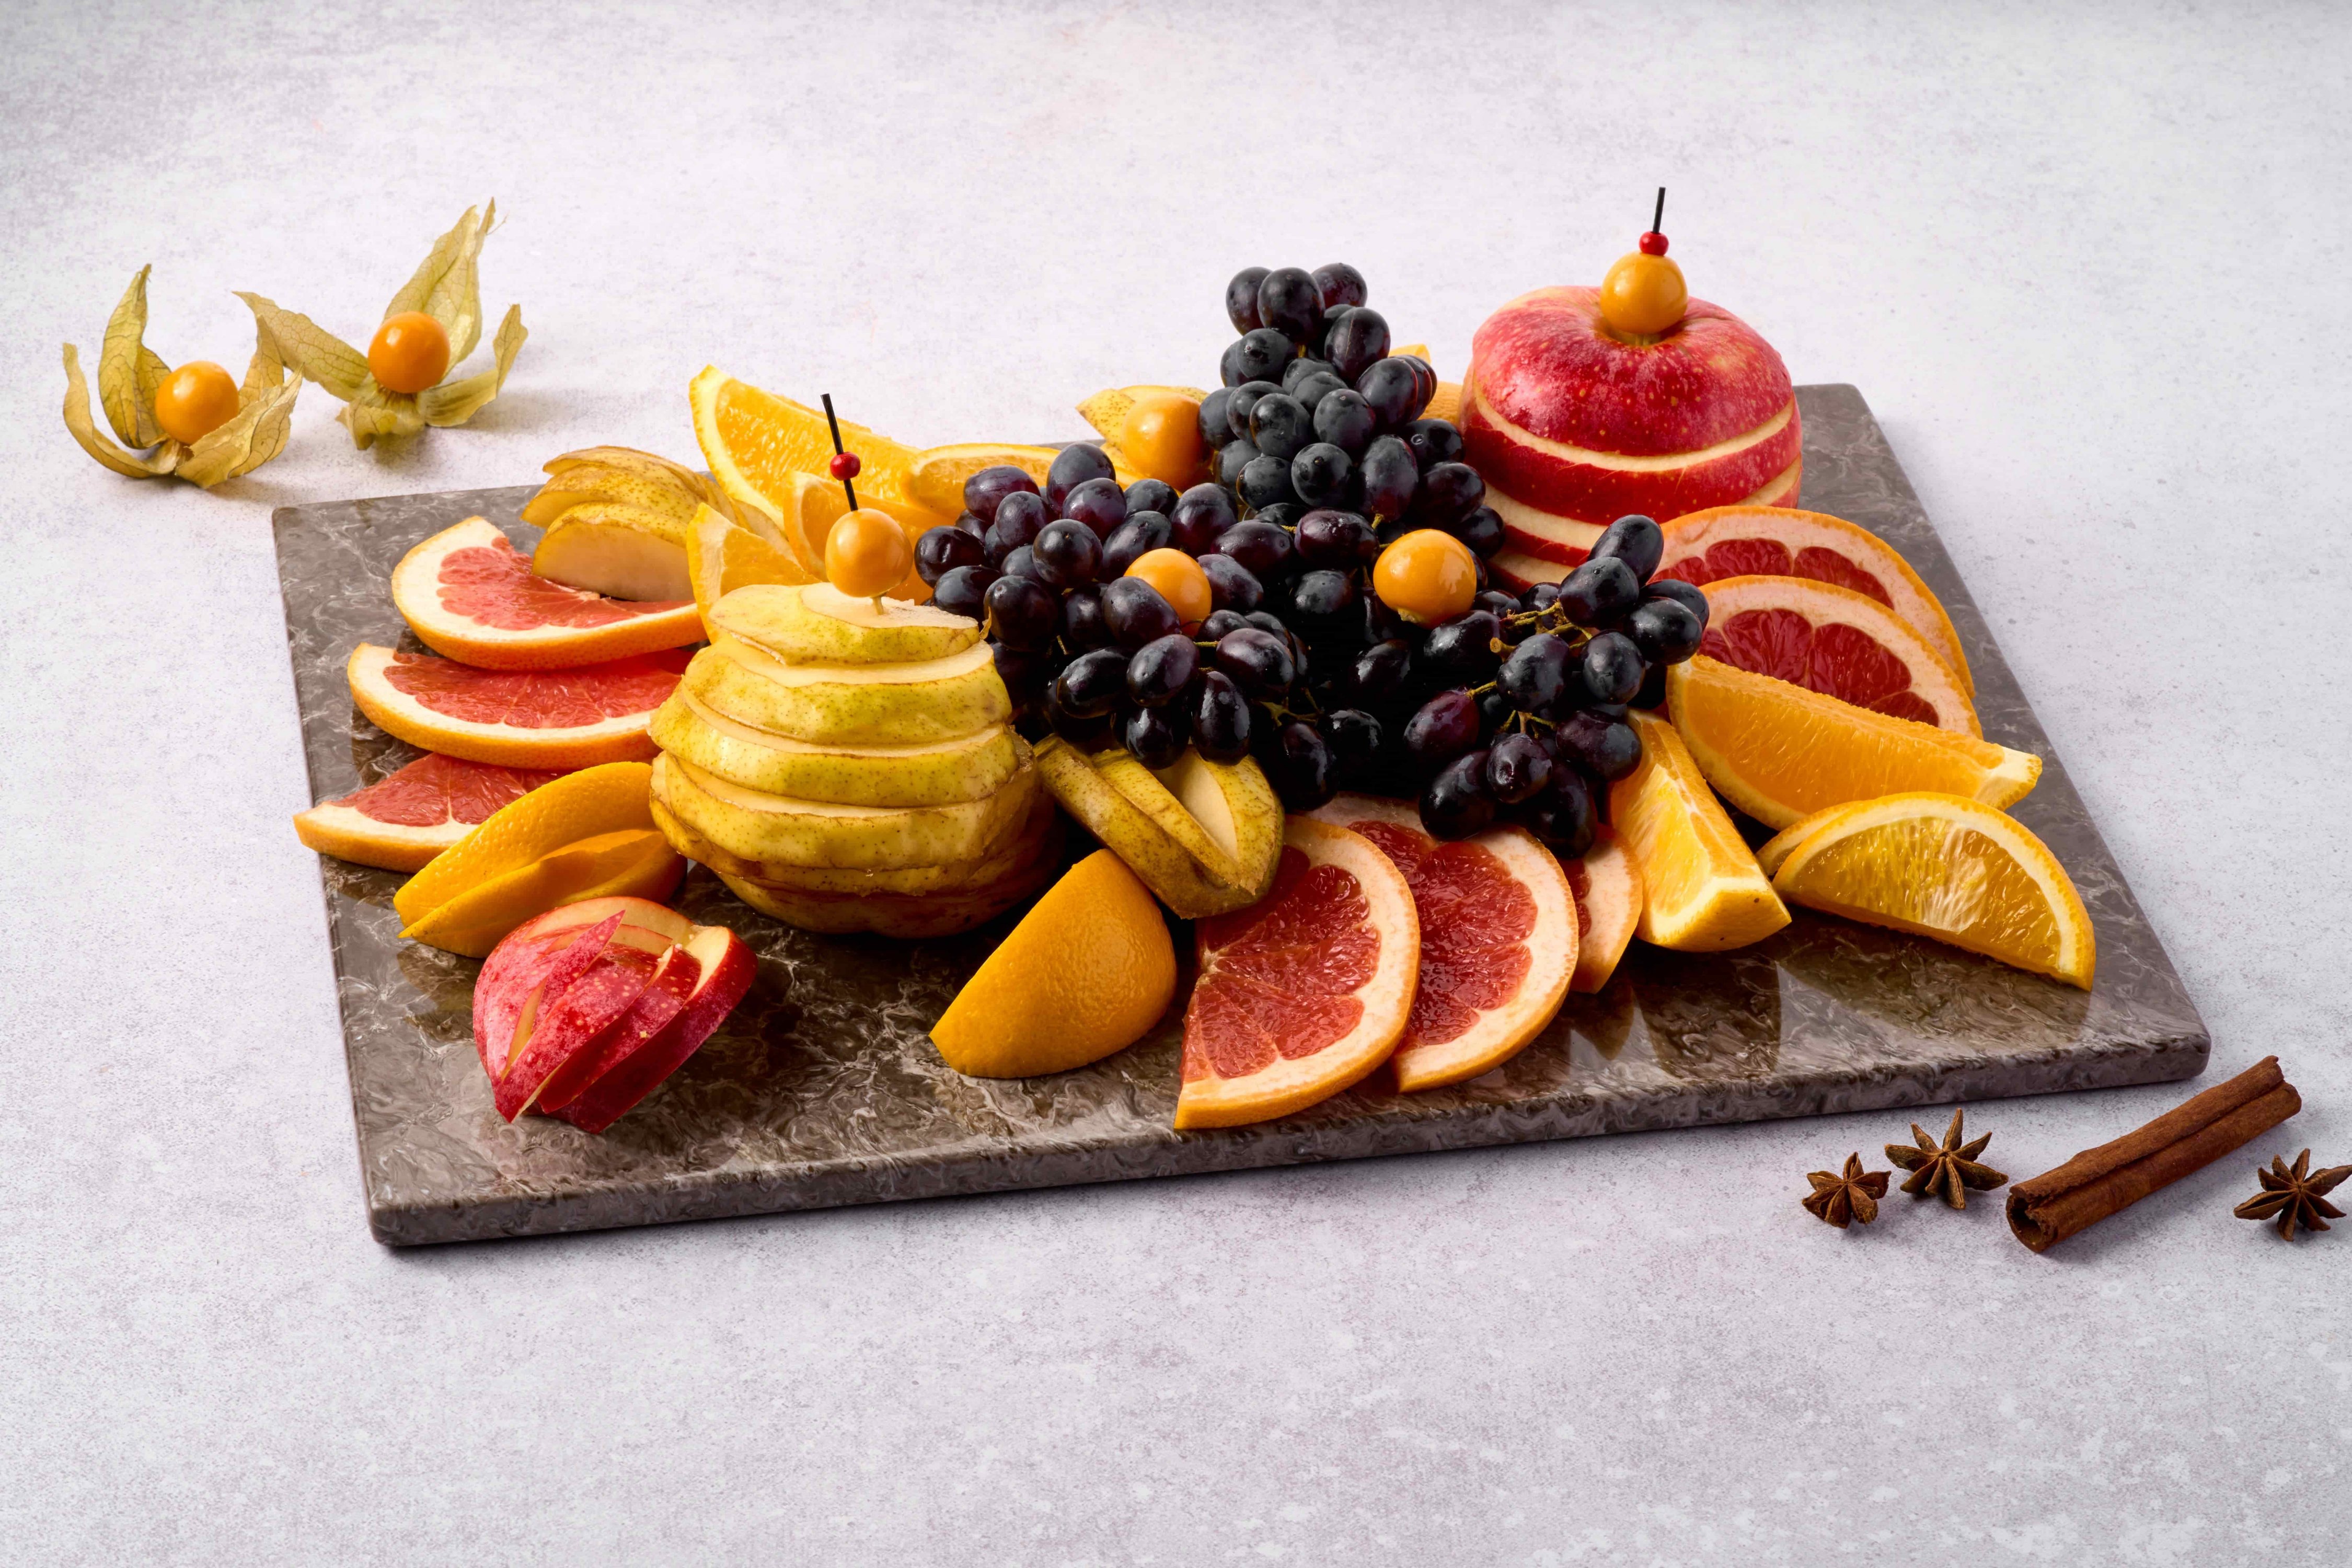 Фруктовые тарелки и фрукты на праздничном столе